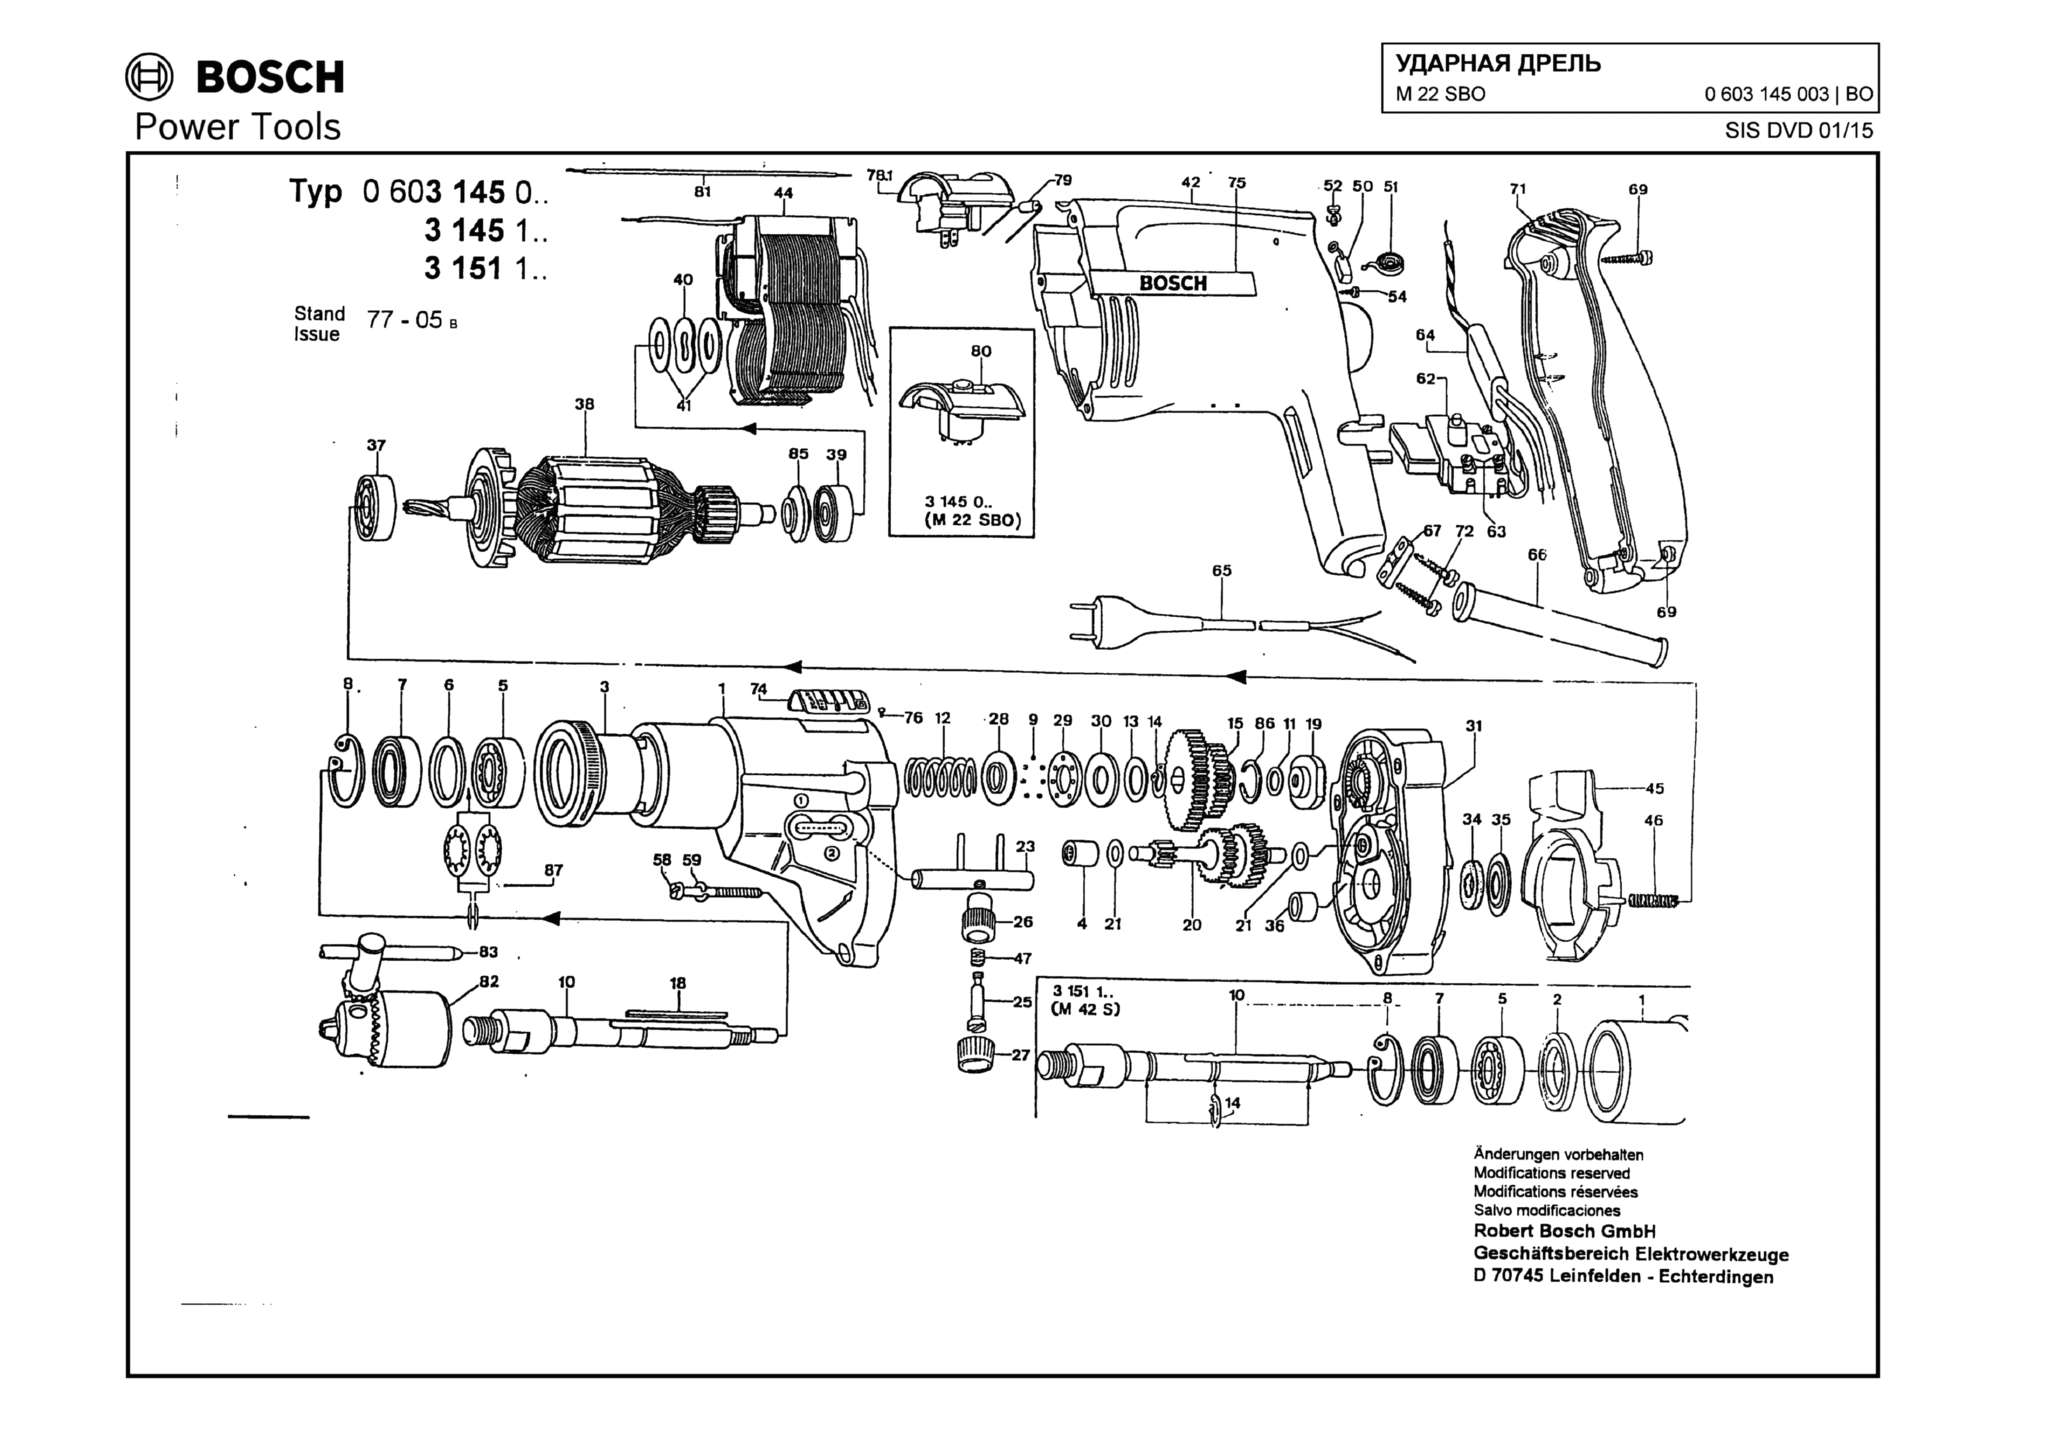 Запчасти, схема и деталировка Bosch M 22 SBO (ТИП 0603145003)